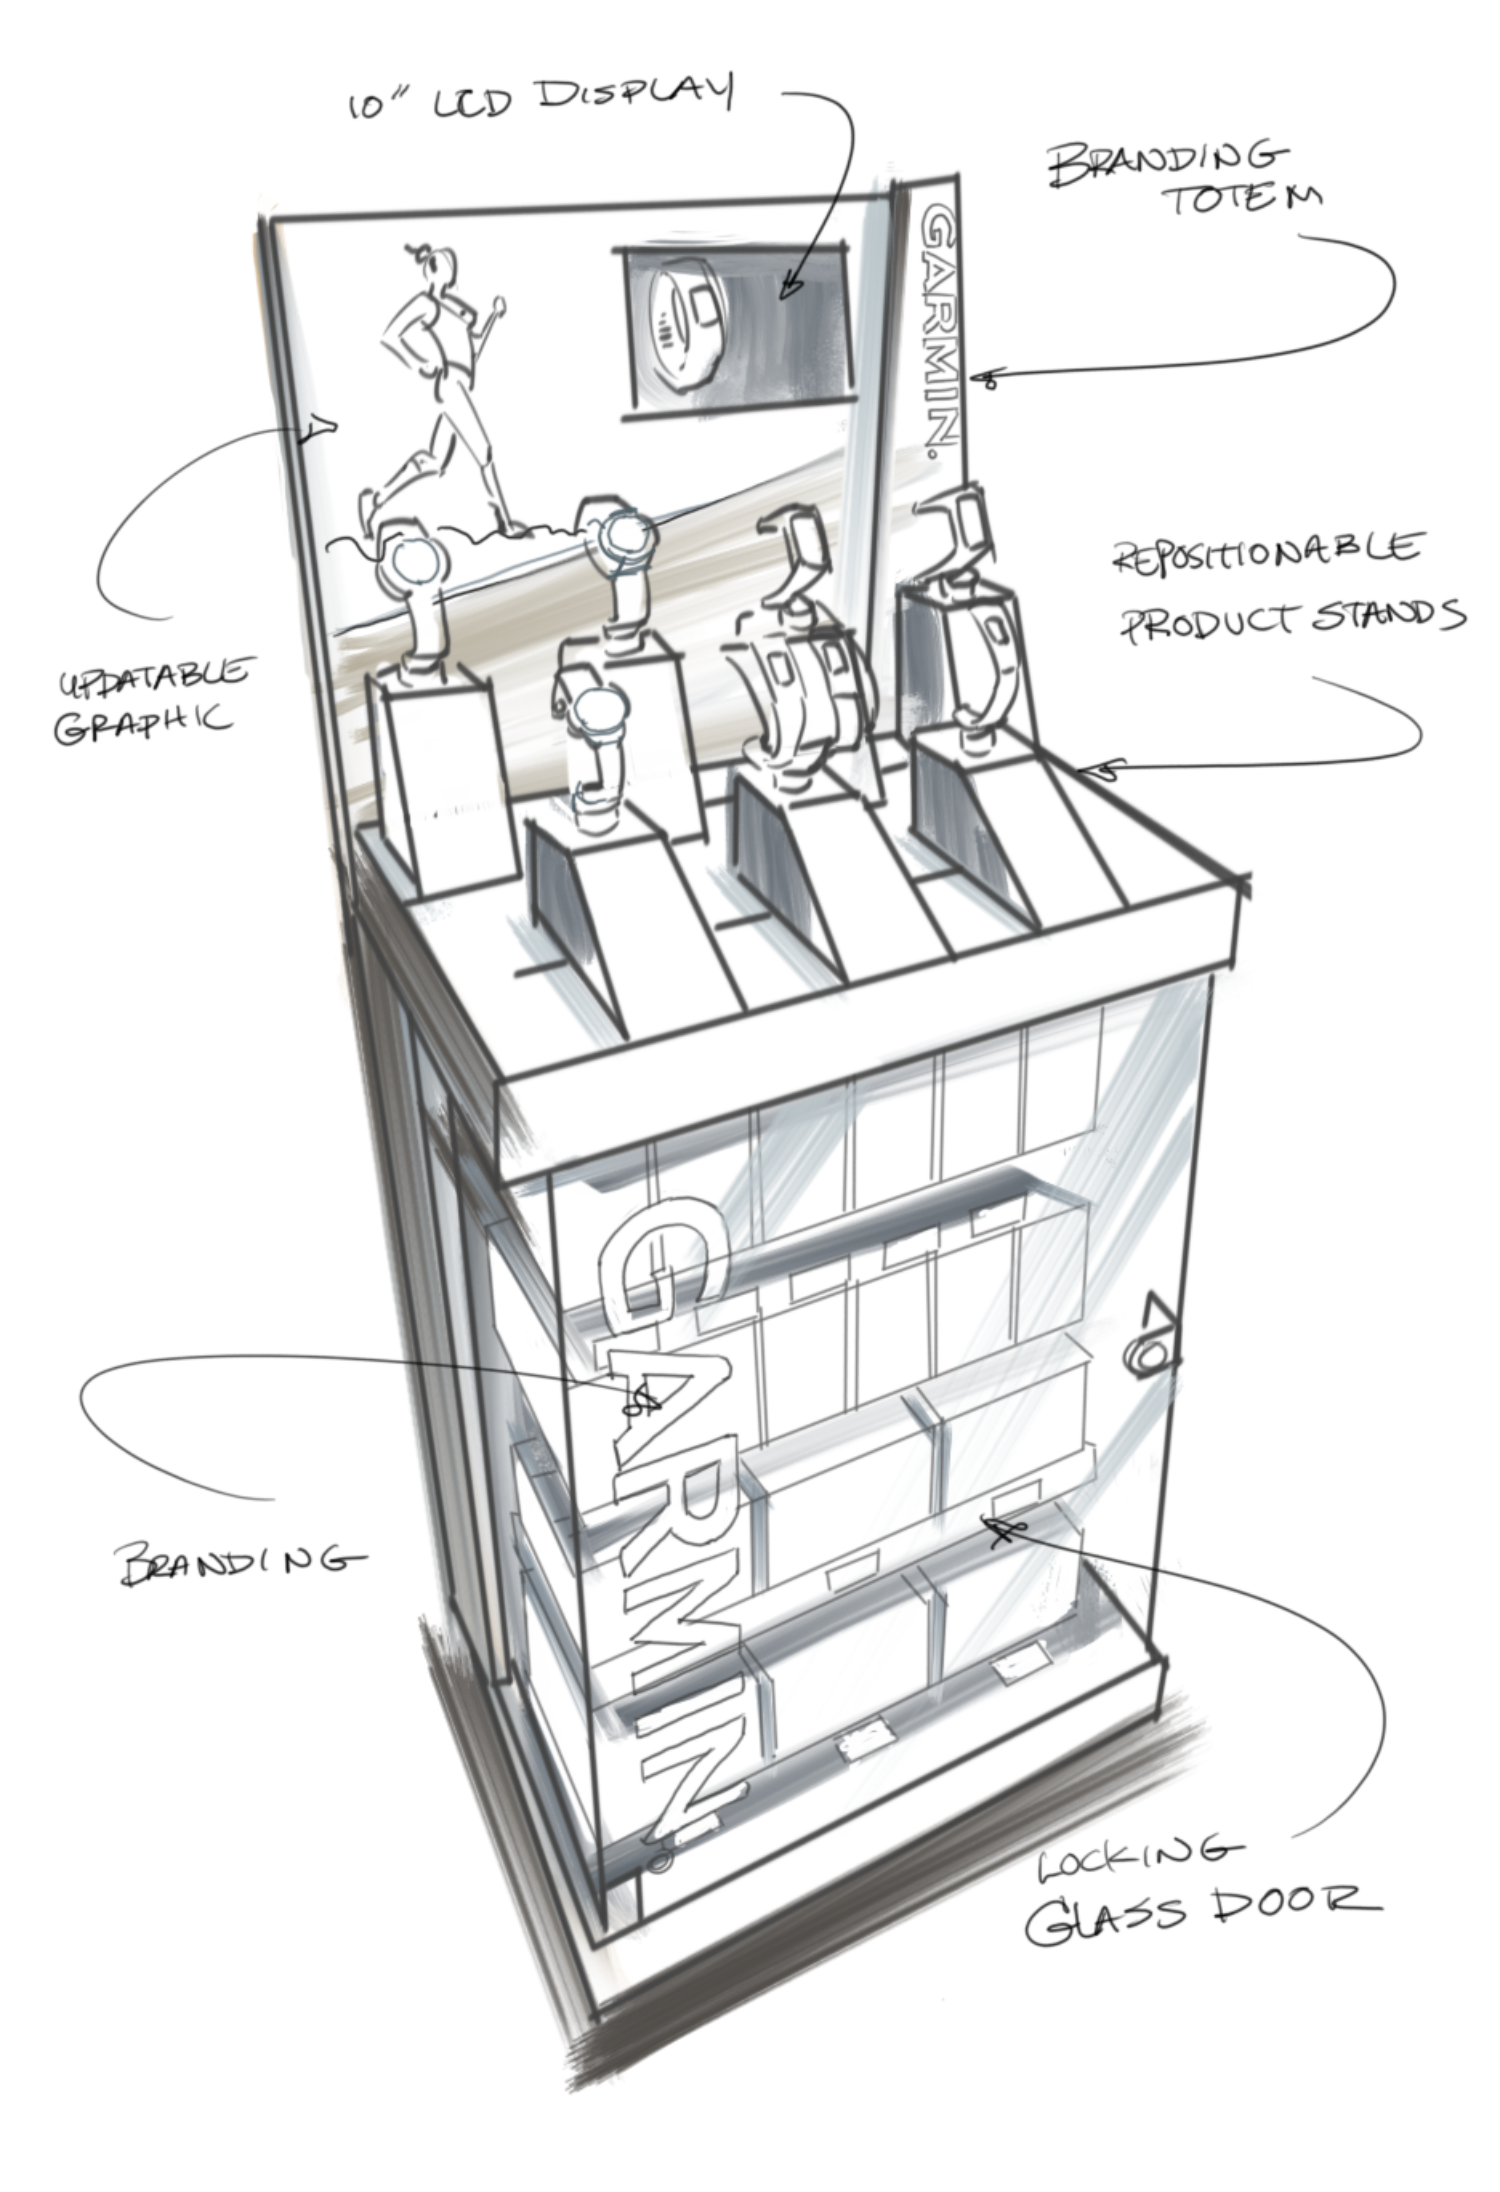 preliminary sketch of a garmin kiosk